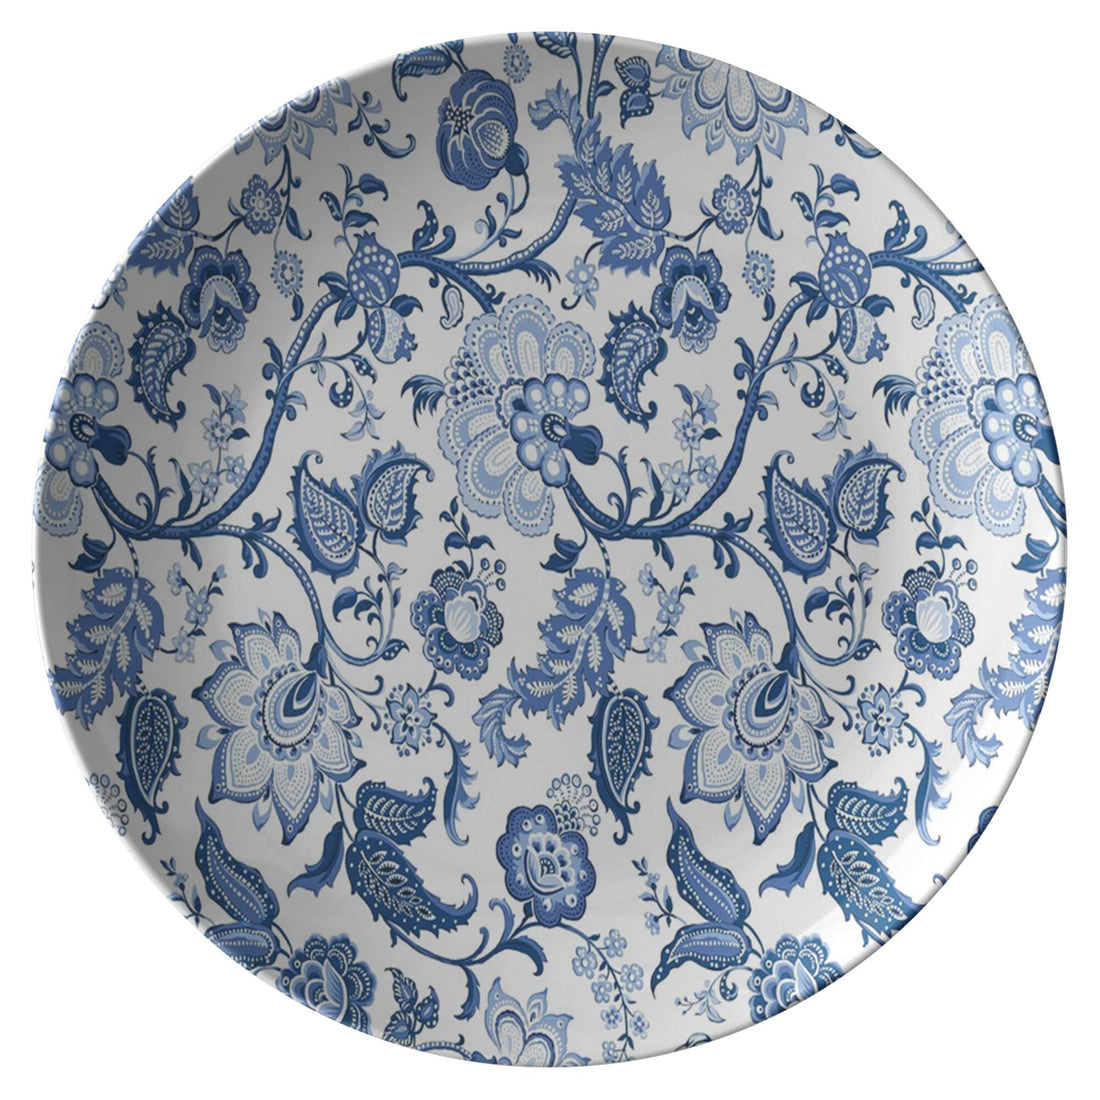 Kate McEnroe New York Chinoiserie Blue and White Floral Dinner PlatesPlates9820SINGLE